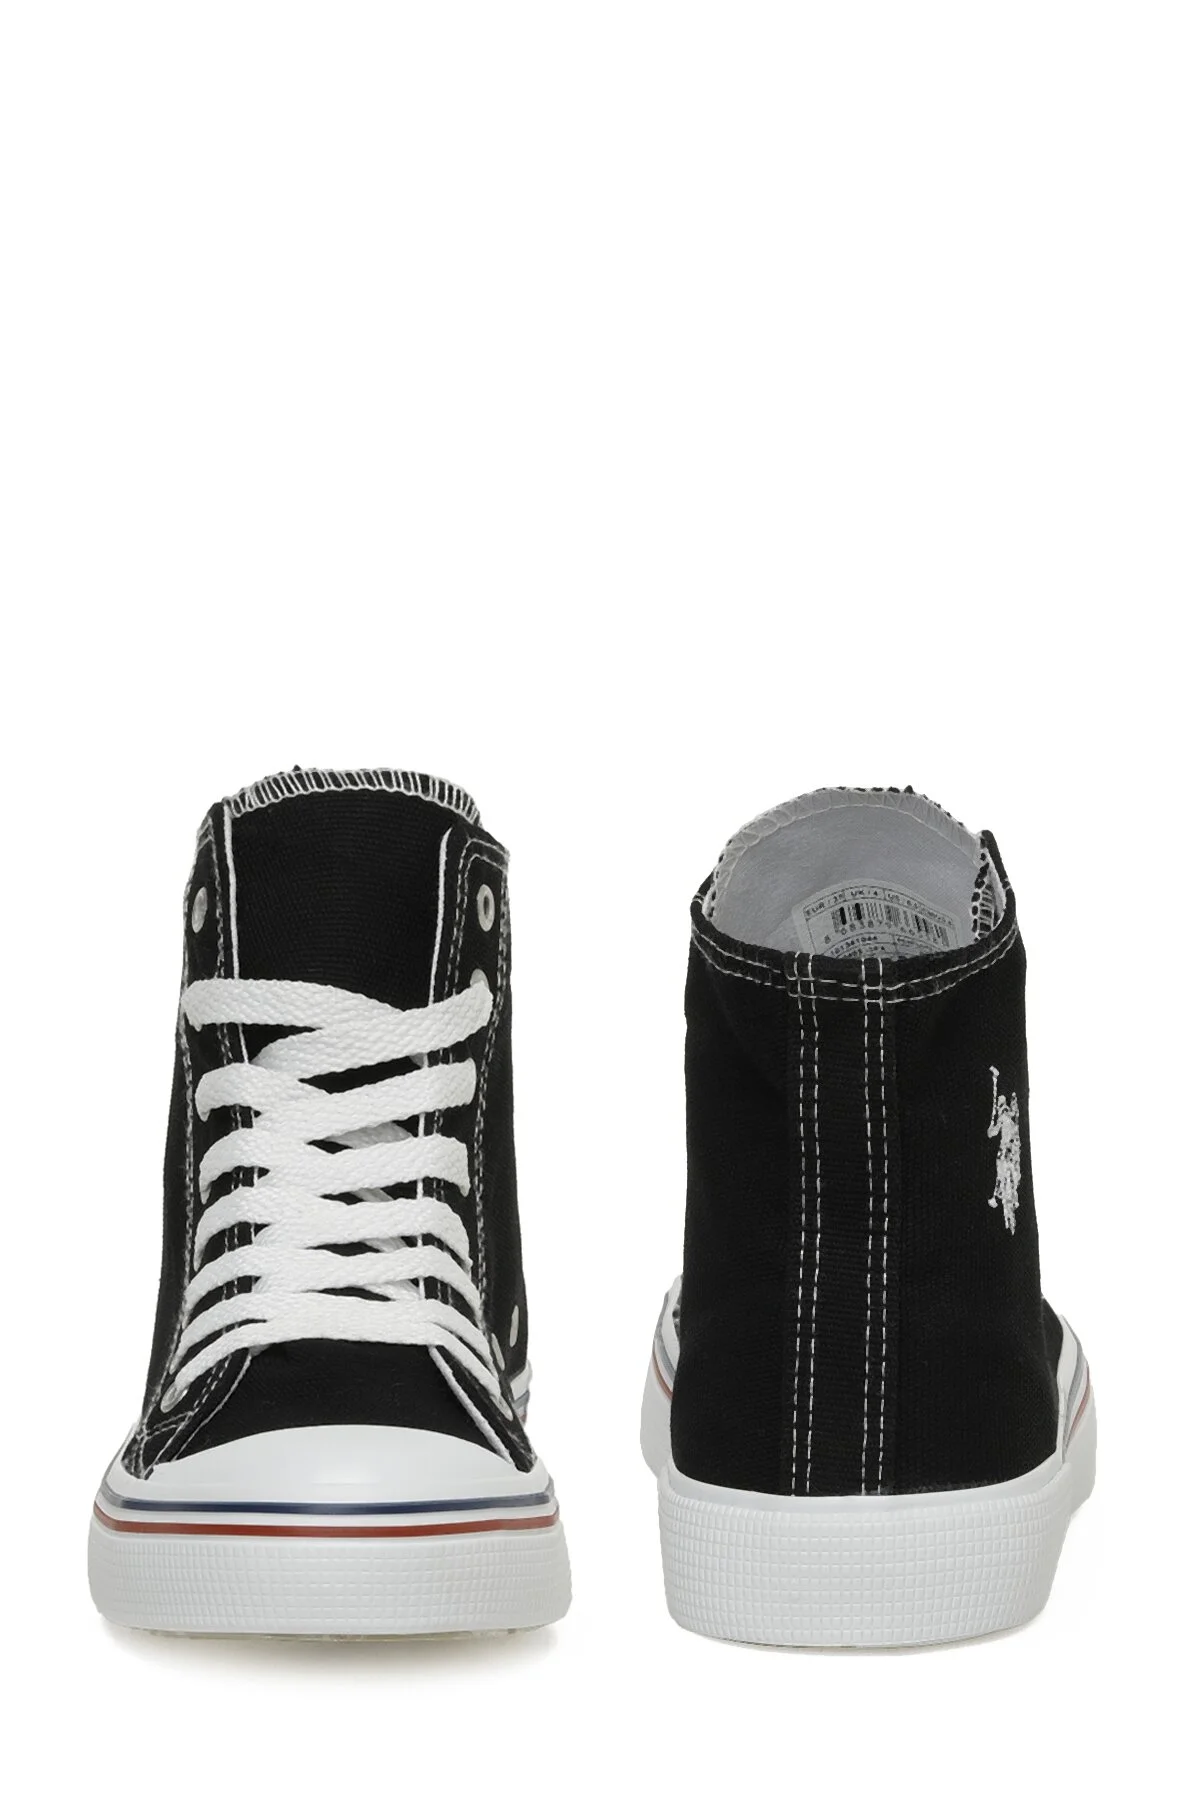 PENELOPE HIGH 3FX Kadın Sneaker-Siyah